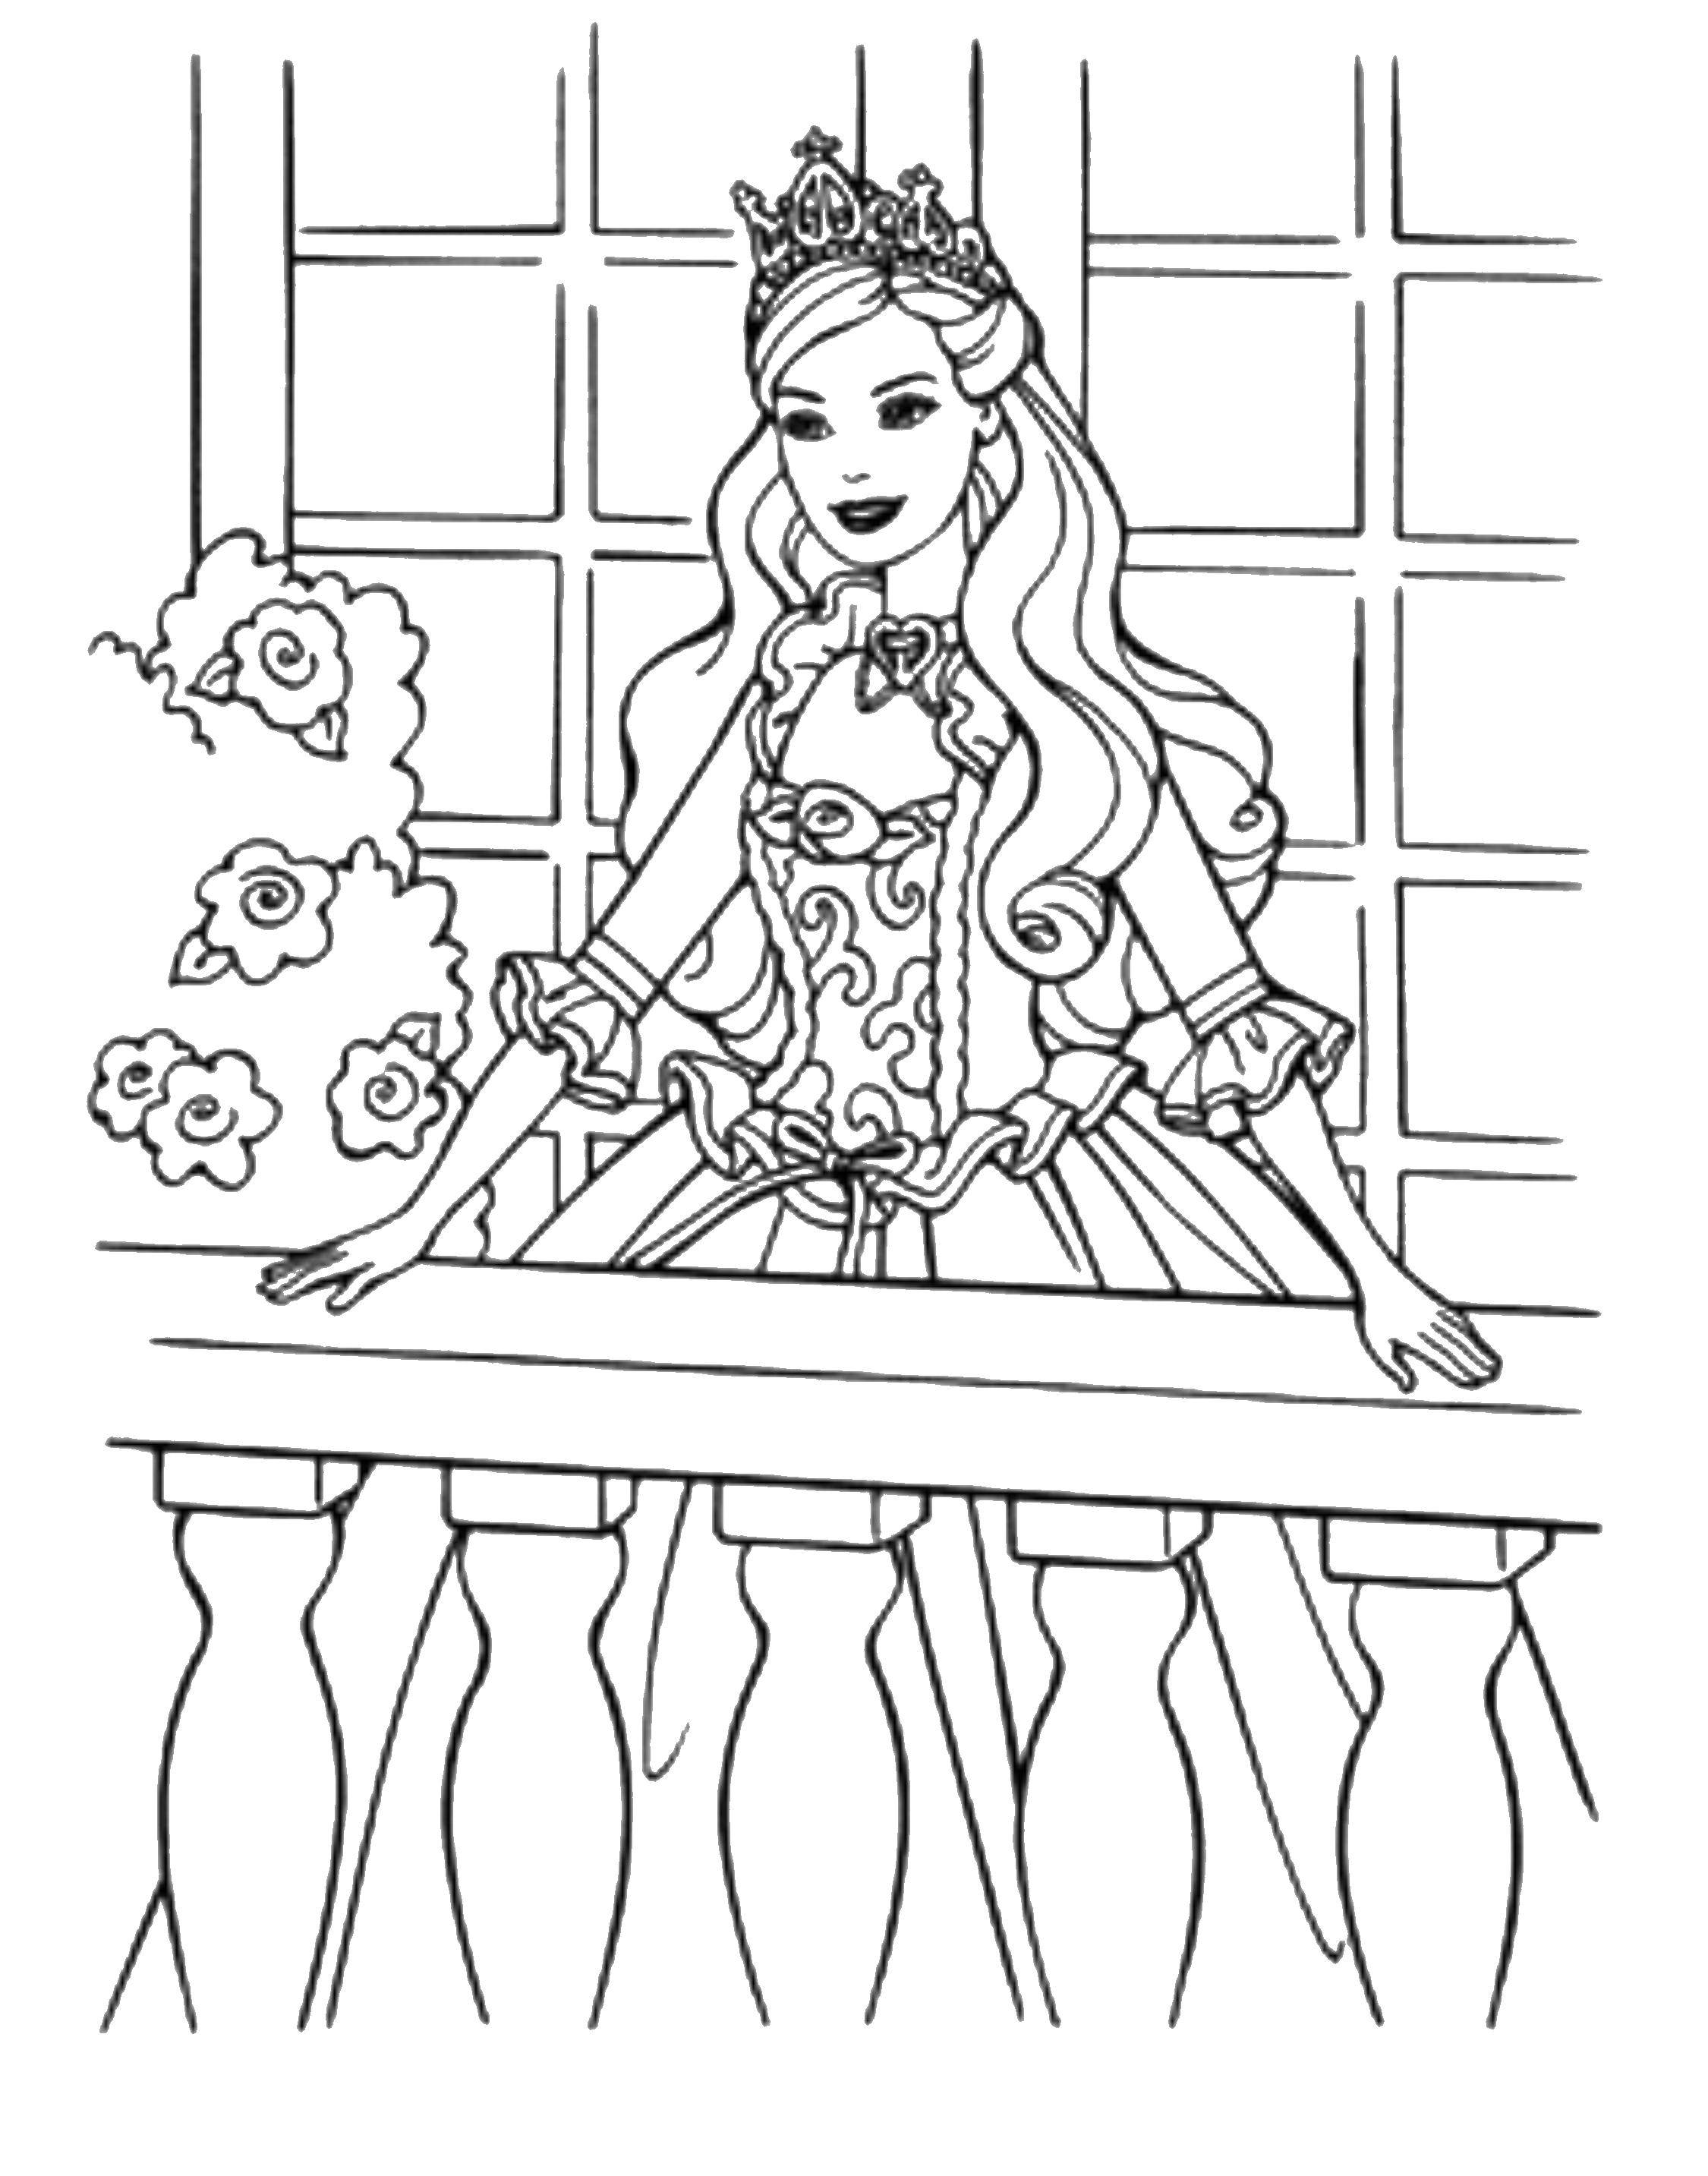 Название: Раскраска Принцесса на балконе. Категория: Принцессы. Теги: Принцесса, платье.